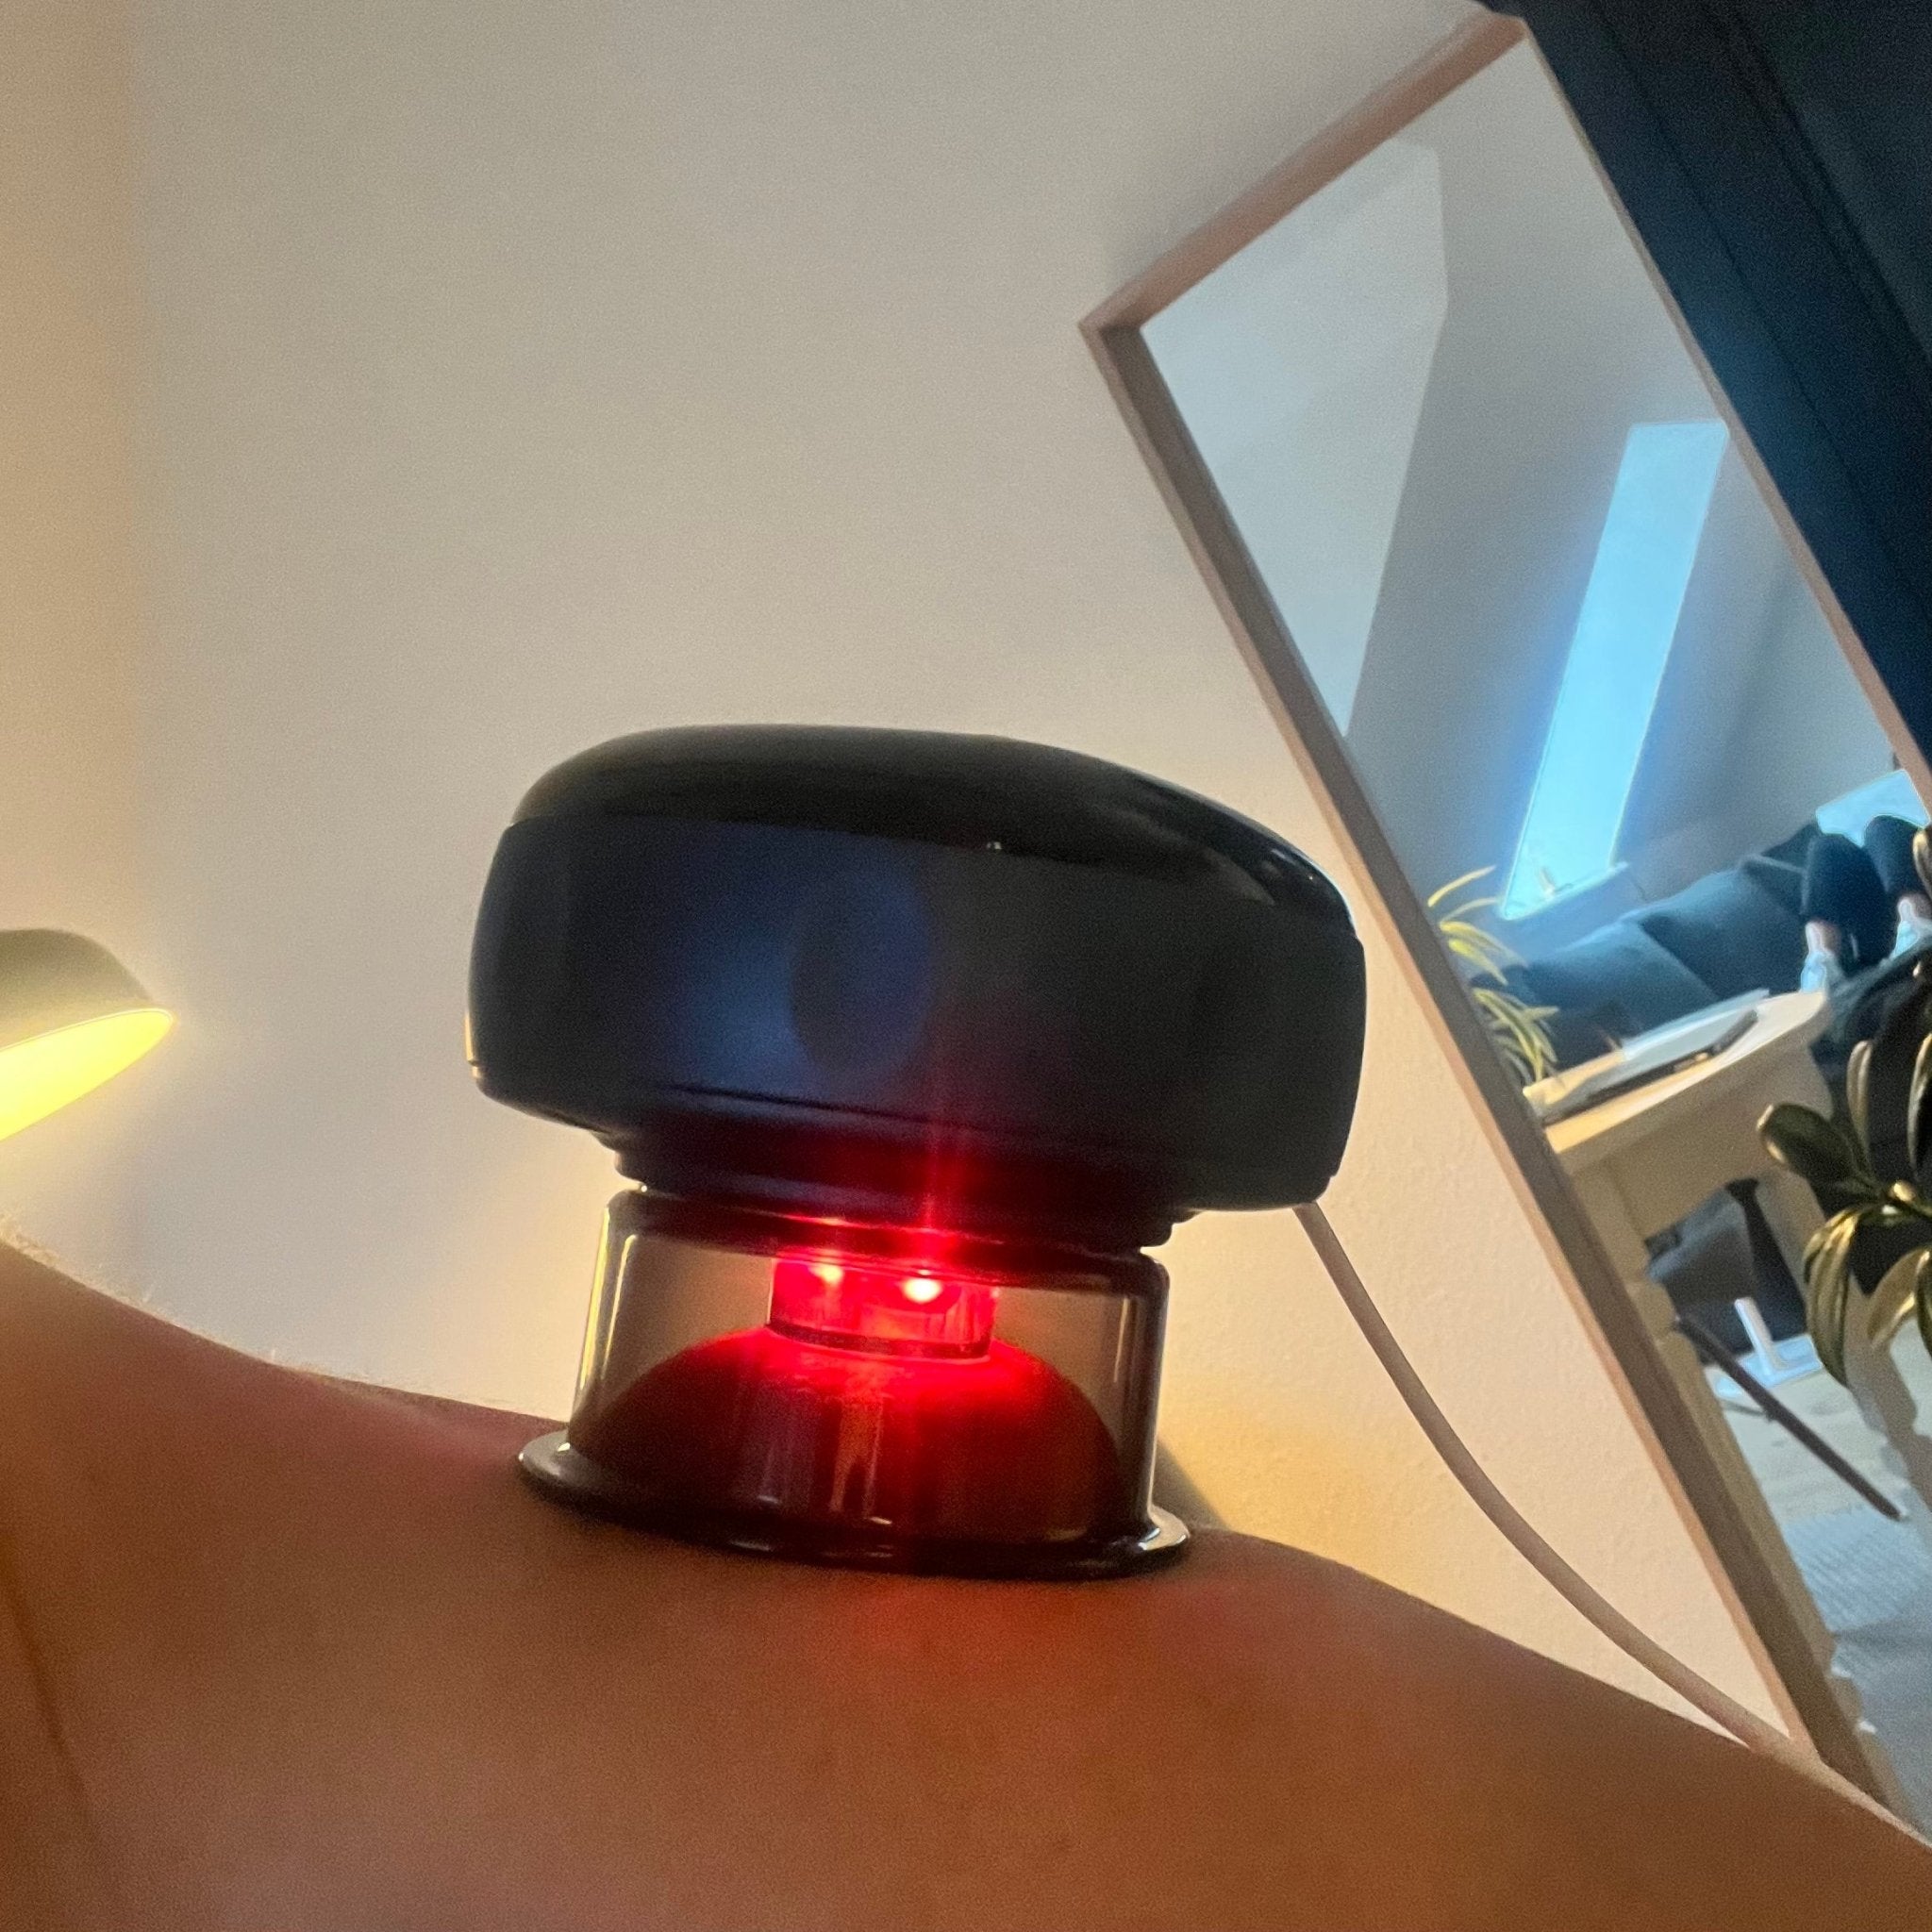 En Smart Cup Basic elektronisk massageanordning påføres en persons skulder. Enheden er sort og cirkulær og udsender et rødt lys. Den er placeret i et rent nordisk hjemmemiljø med spejl og del.